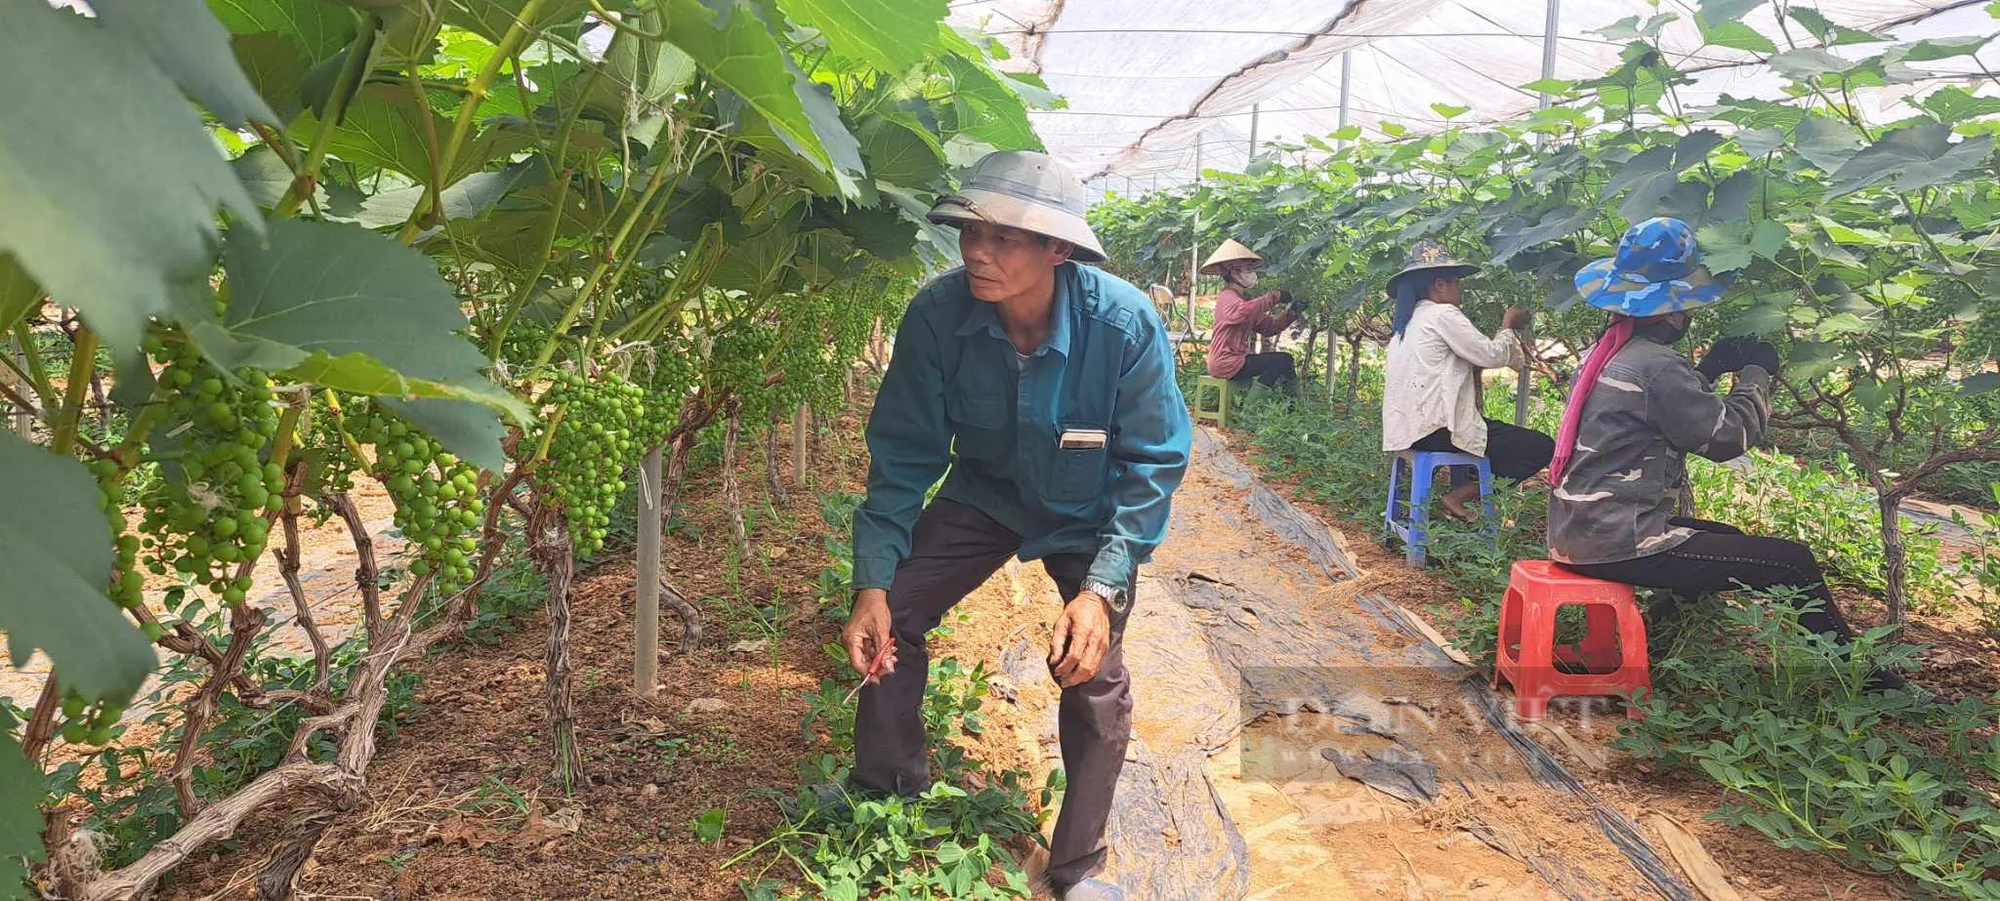 Trồng nho ở Sơn La kiểu gì mà vô vườn nhìn đâu cũng thấy trái, hái 150ha, nông dân "bỏ túi" bộn tiền- Ảnh 1.